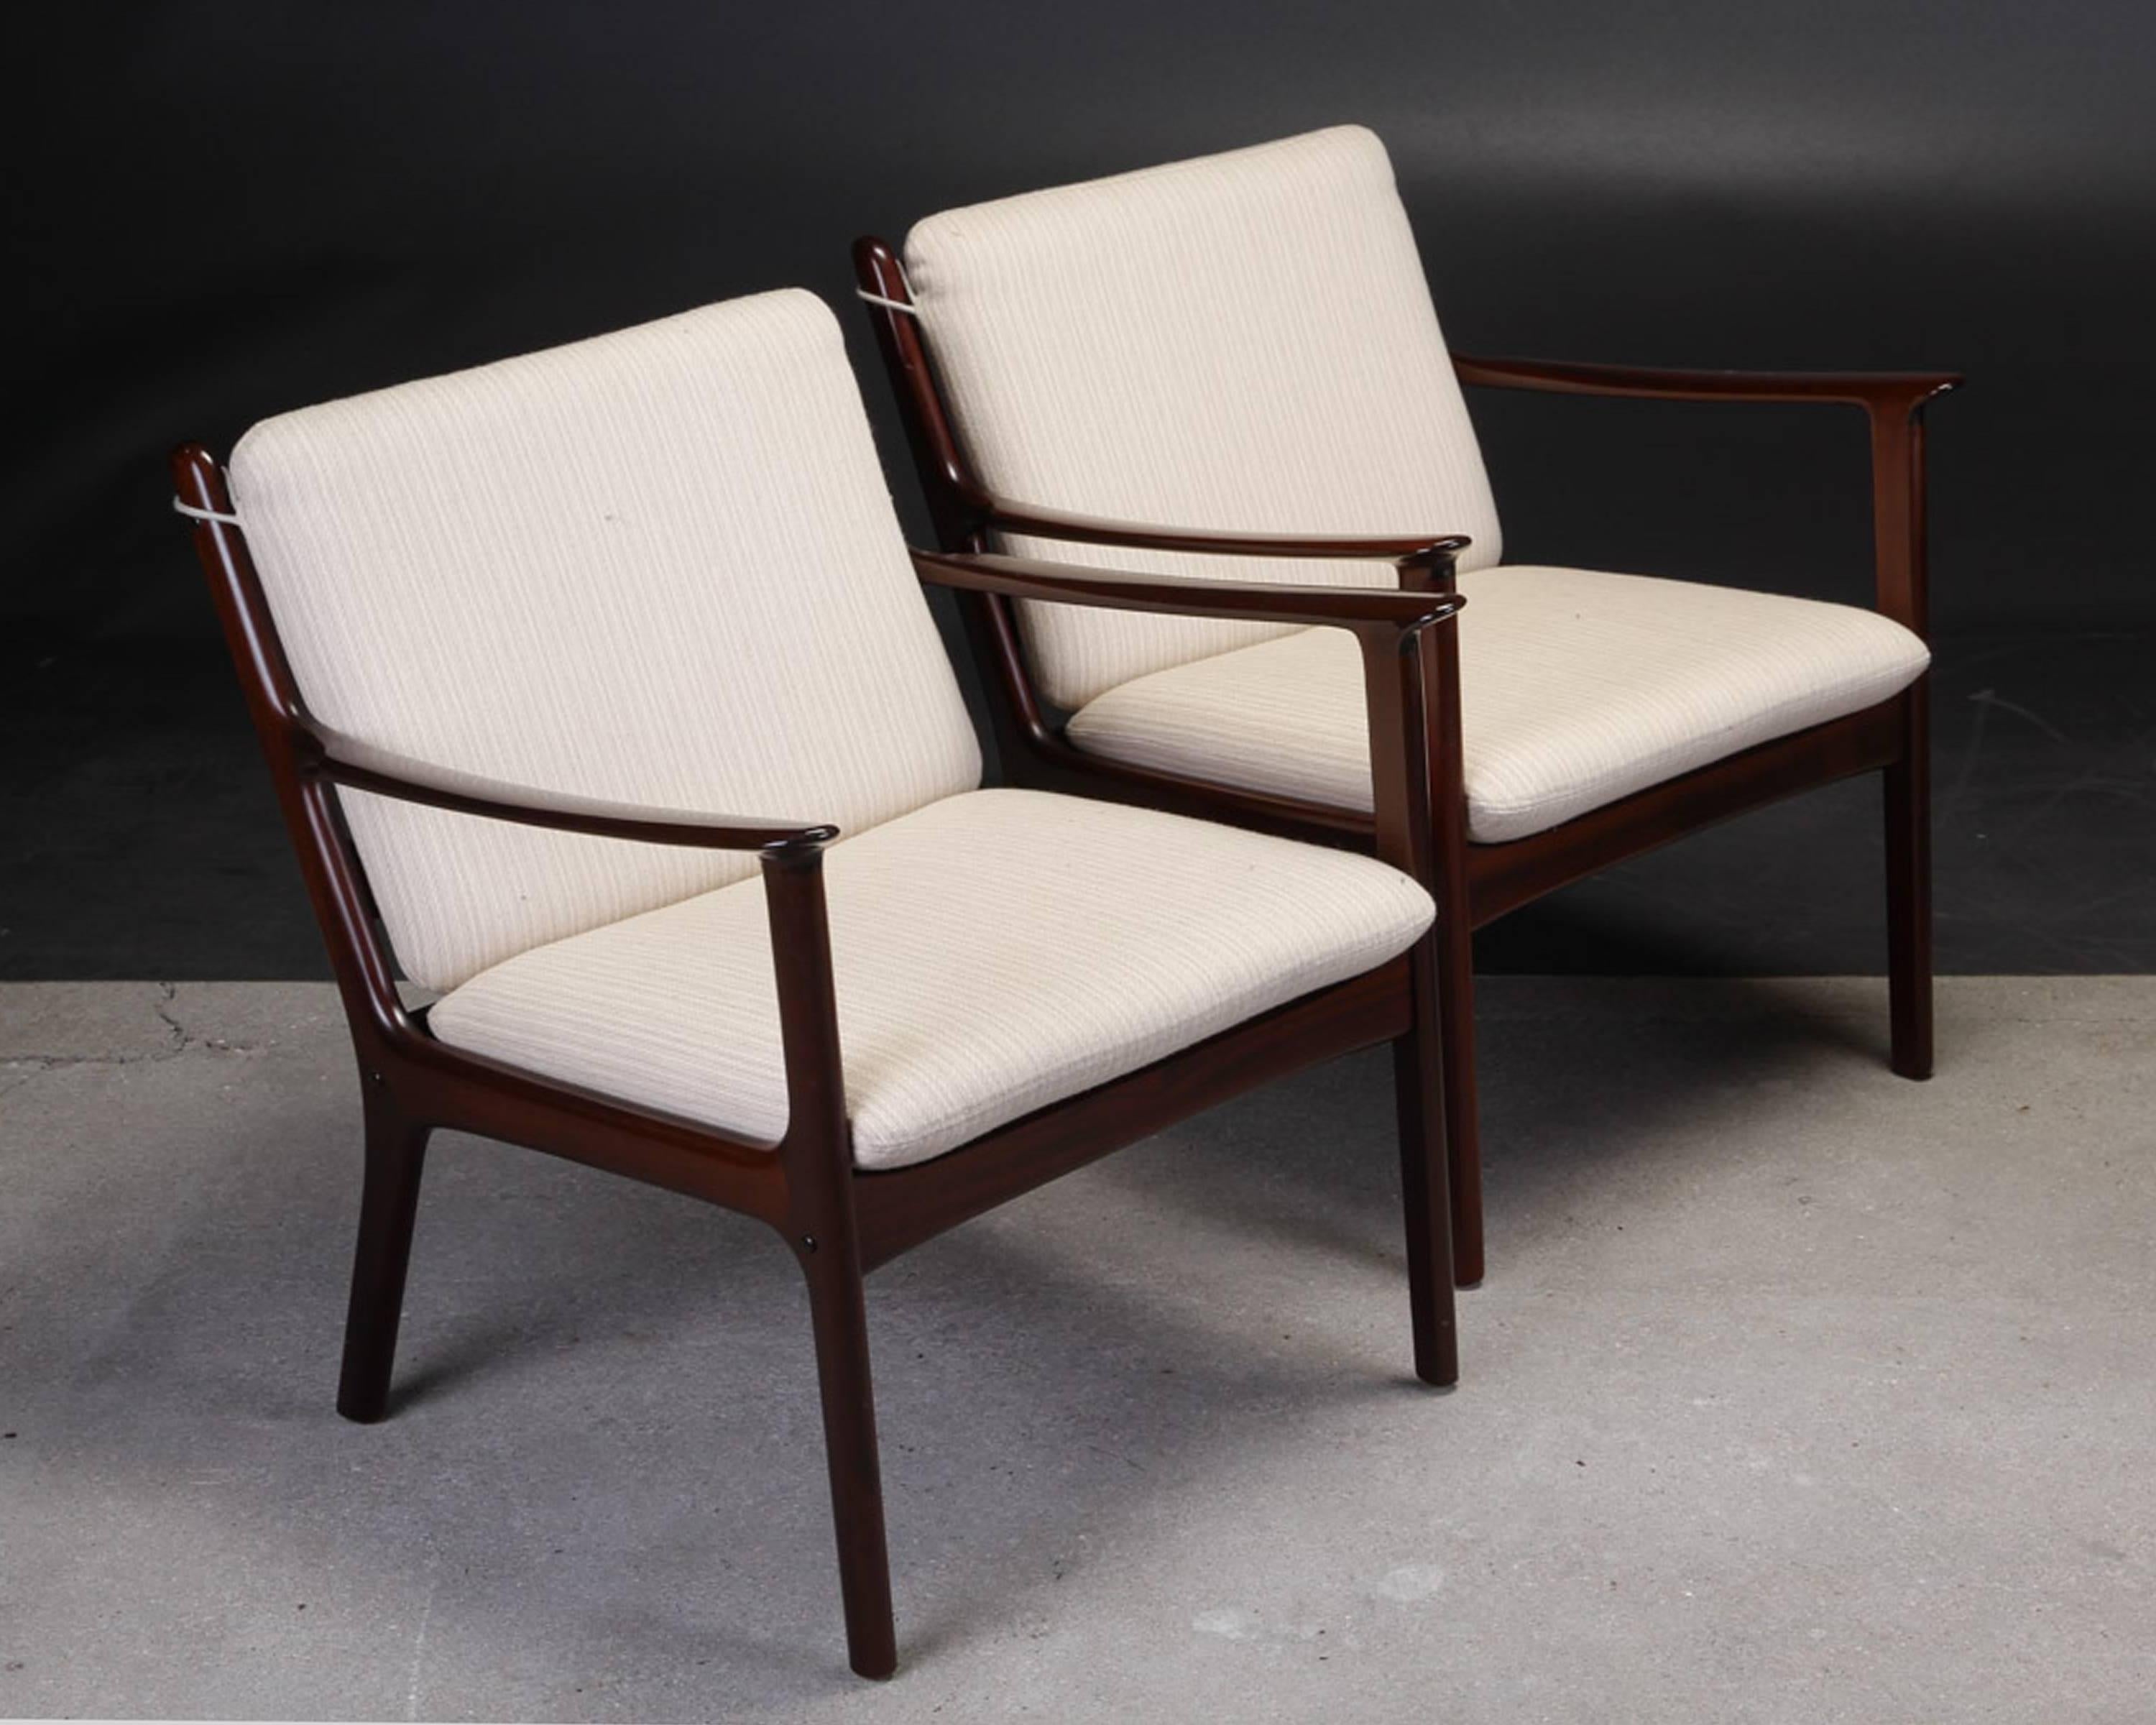 Ensemble de deux chaises longues Ole Wanscher PJ112 en acajou, fabriquées par P. Jeppesens Møbelfabrik,

Les chaises ont été révisées et retouchées par notre ébéniste pour s'assurer qu'elles sont en très bon état avec seulement des signes minimes